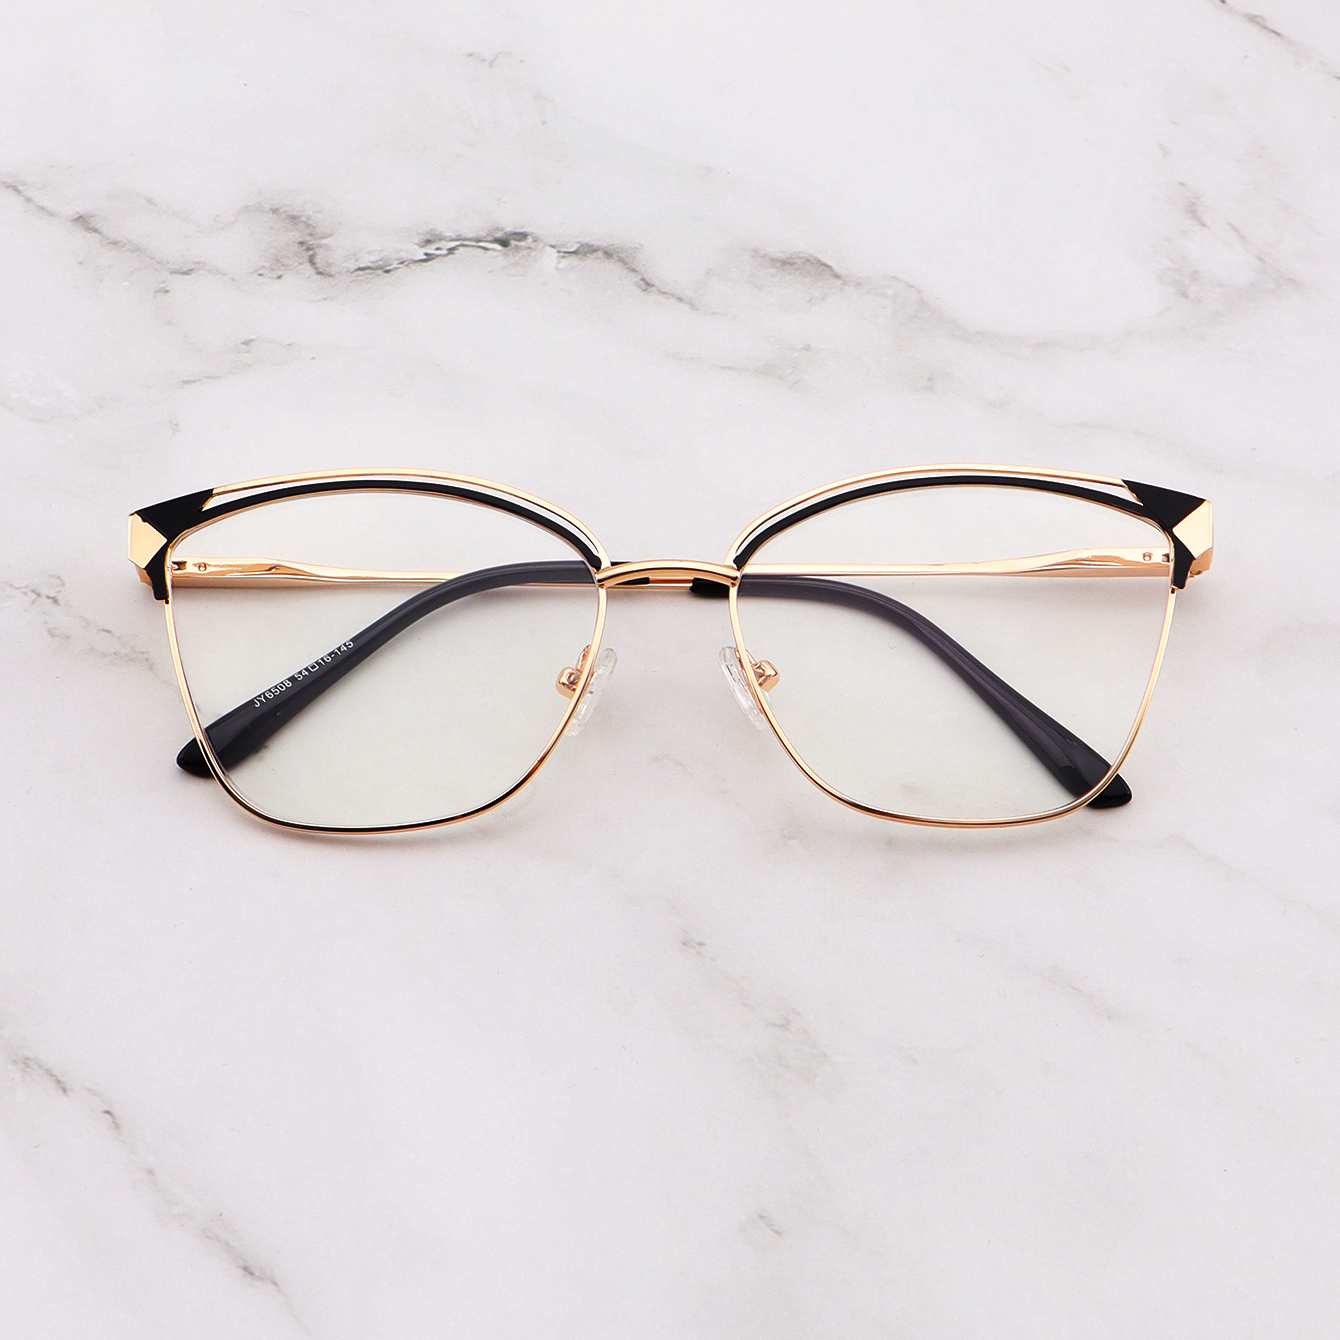 Cat Eye Anti Blue Light Glasses - Fashionable Black Stainless Steel Flat Glasses